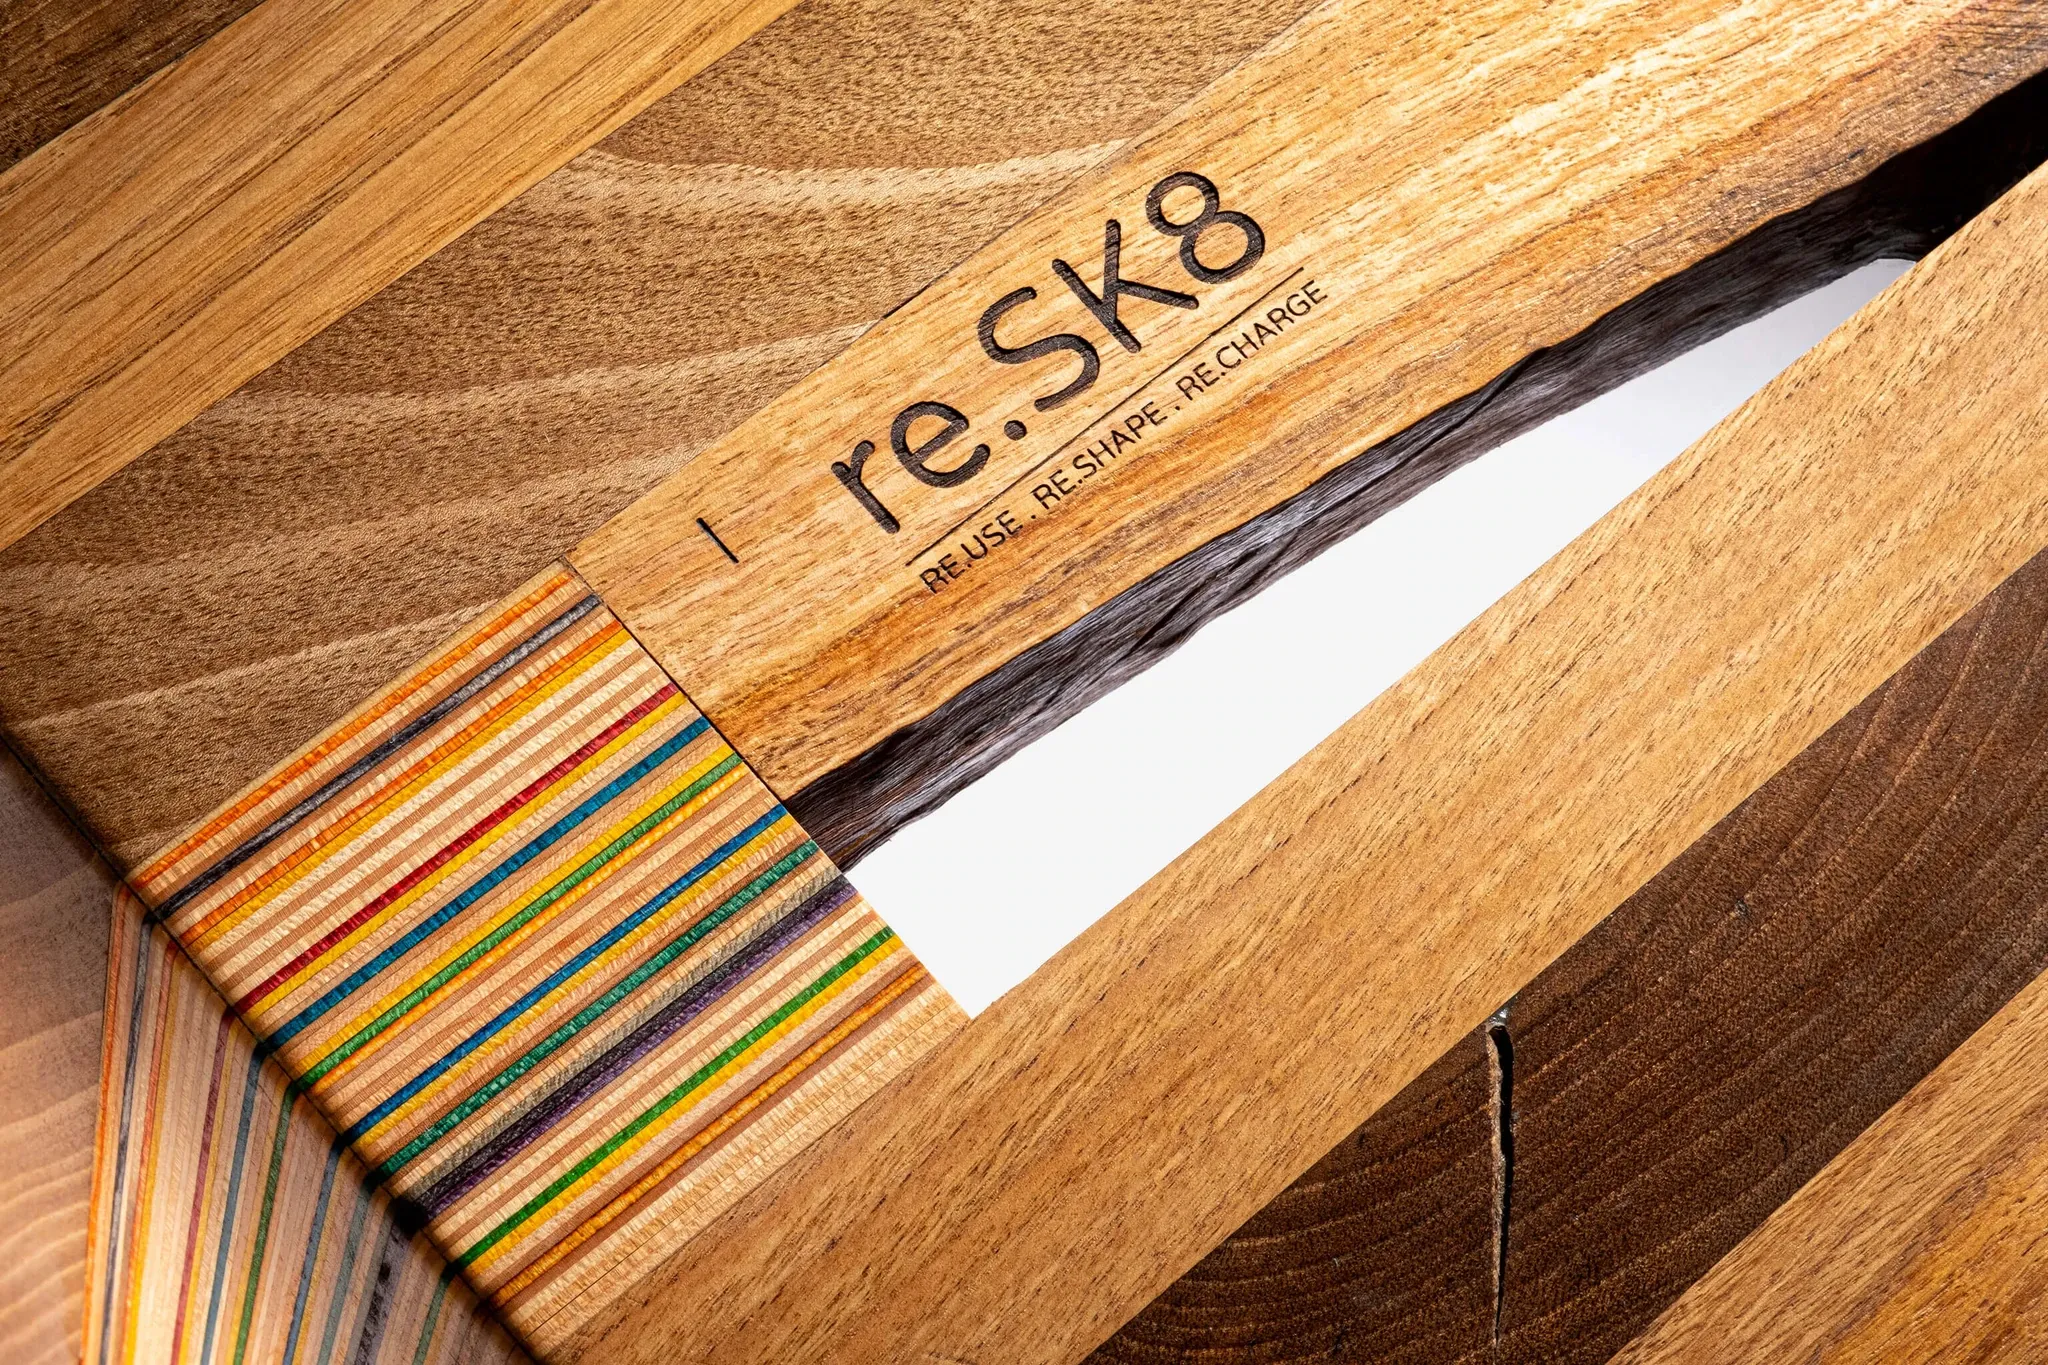 re.SK8: mobiliário ímpar para dispositivos de excelência